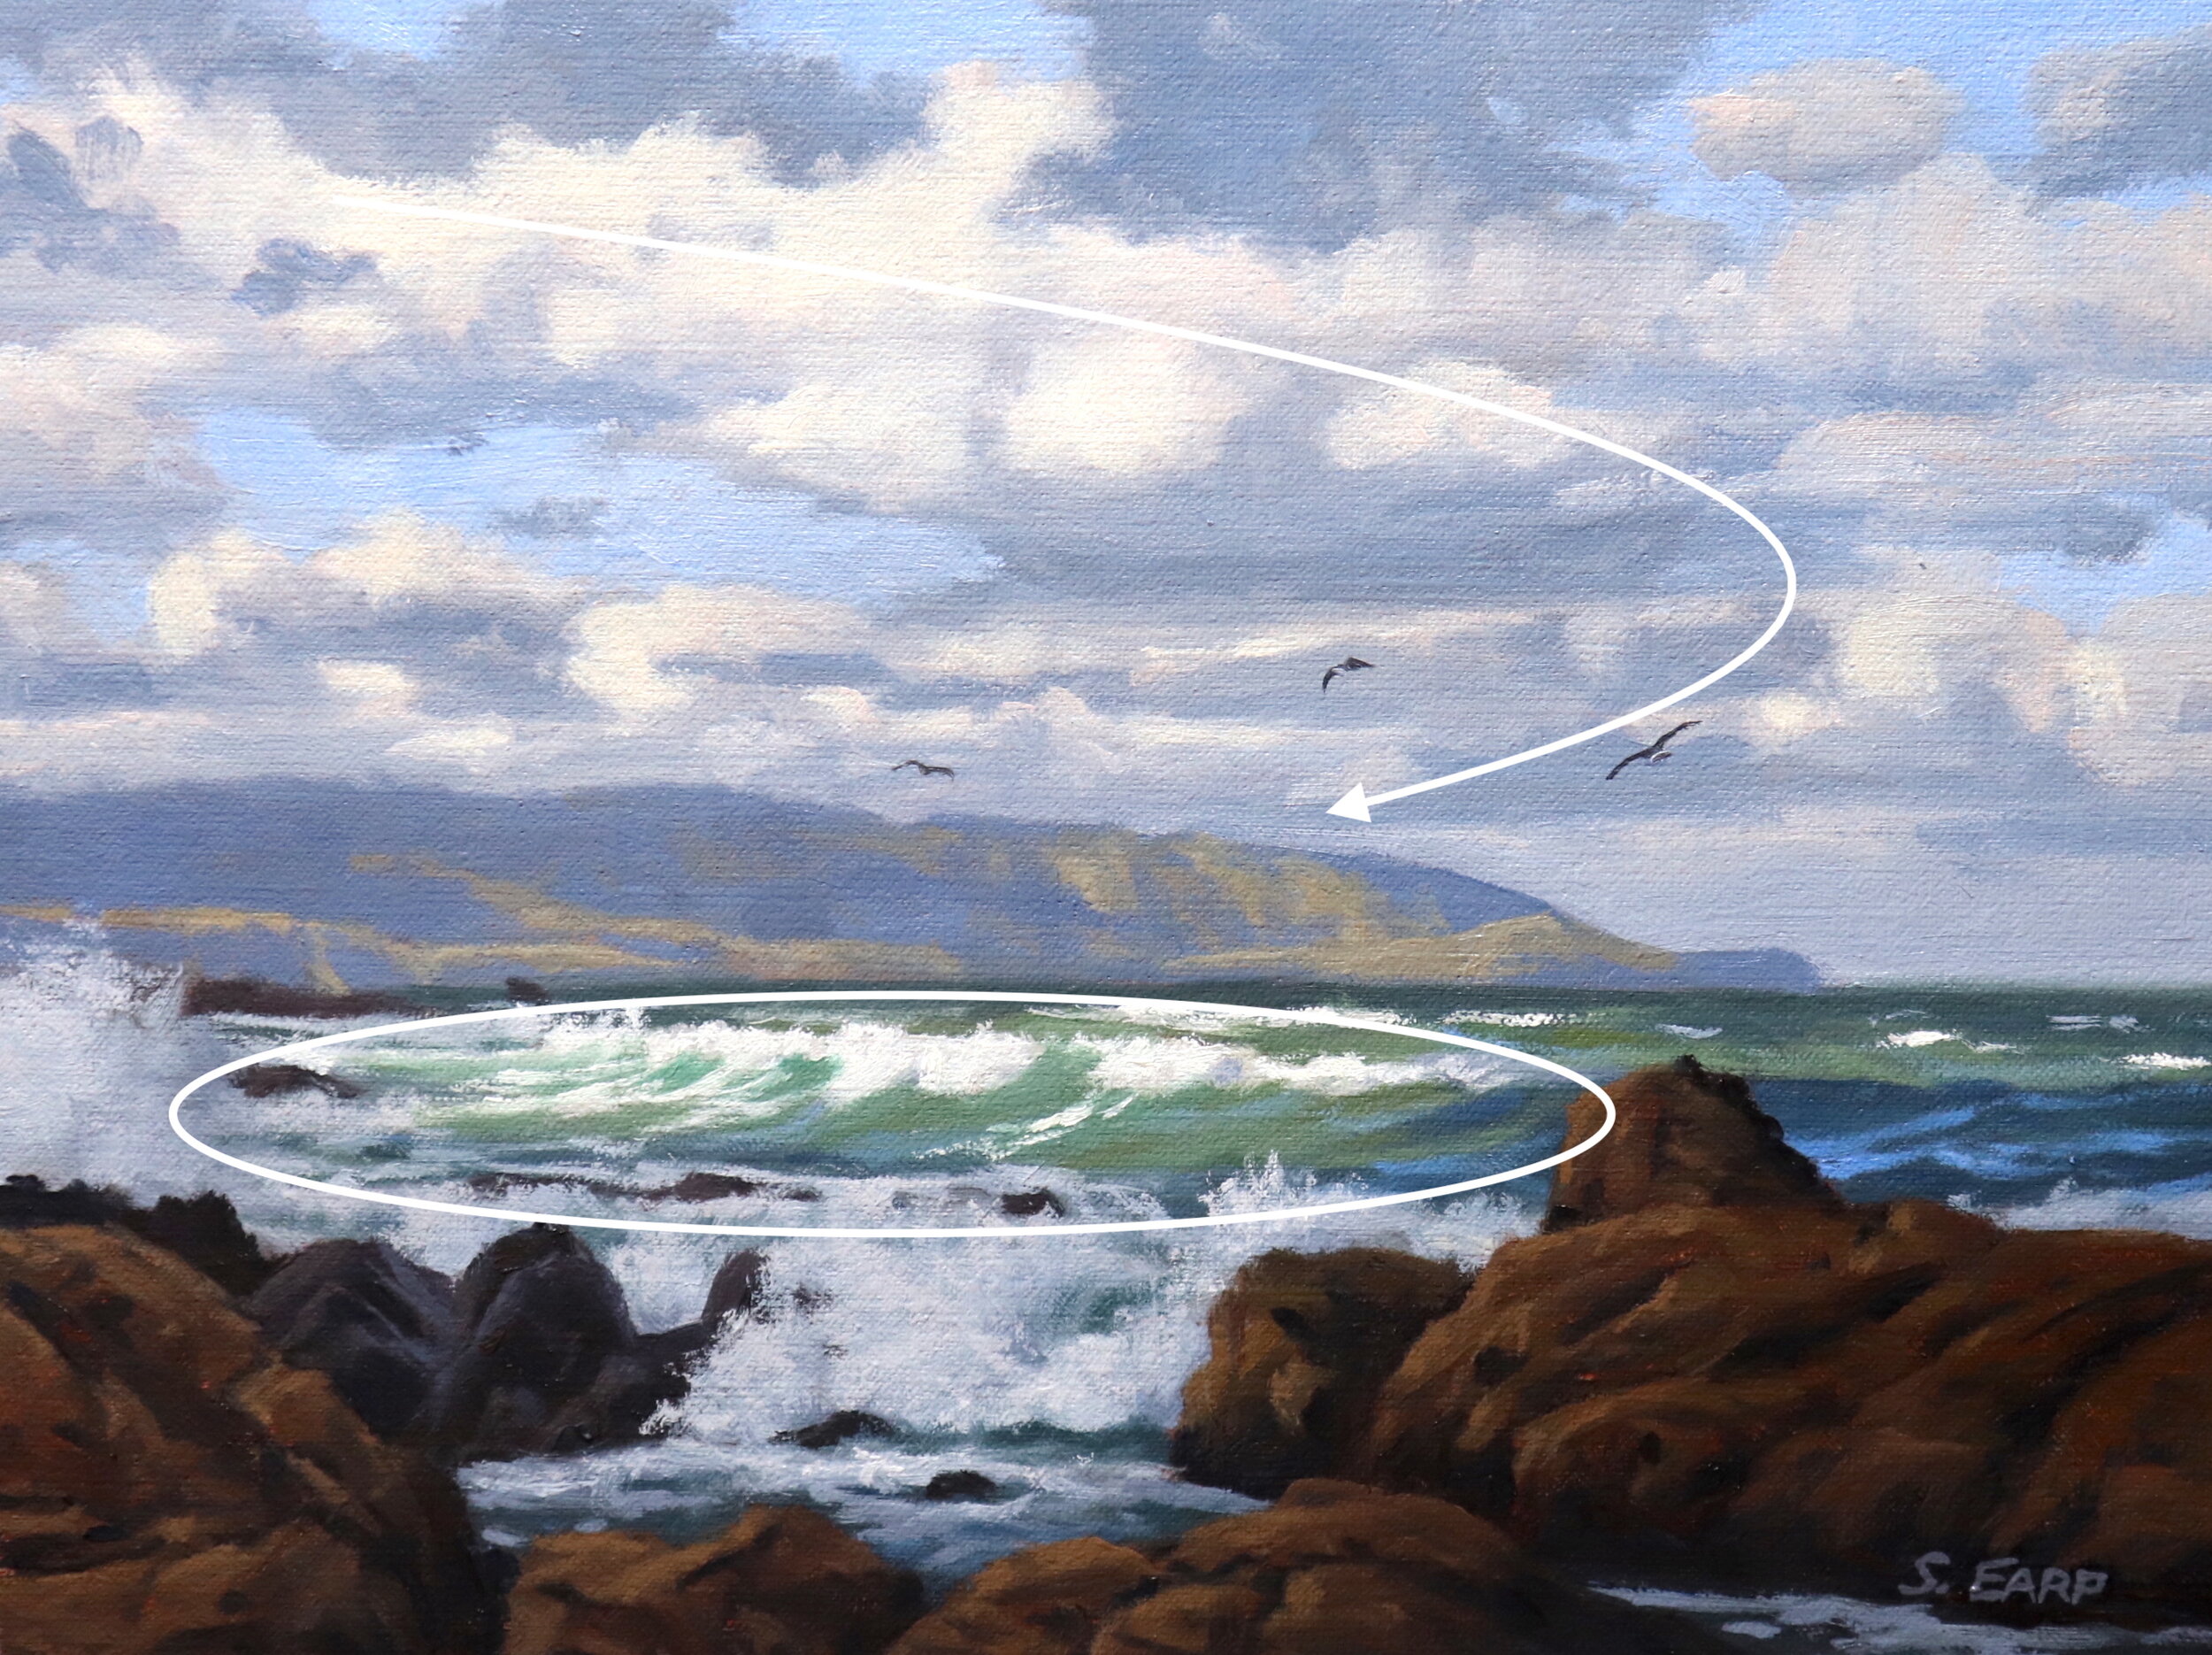 Storm Front - Wellington -Seascape - Oil Painting - Samuel Earp copy 3.JPG